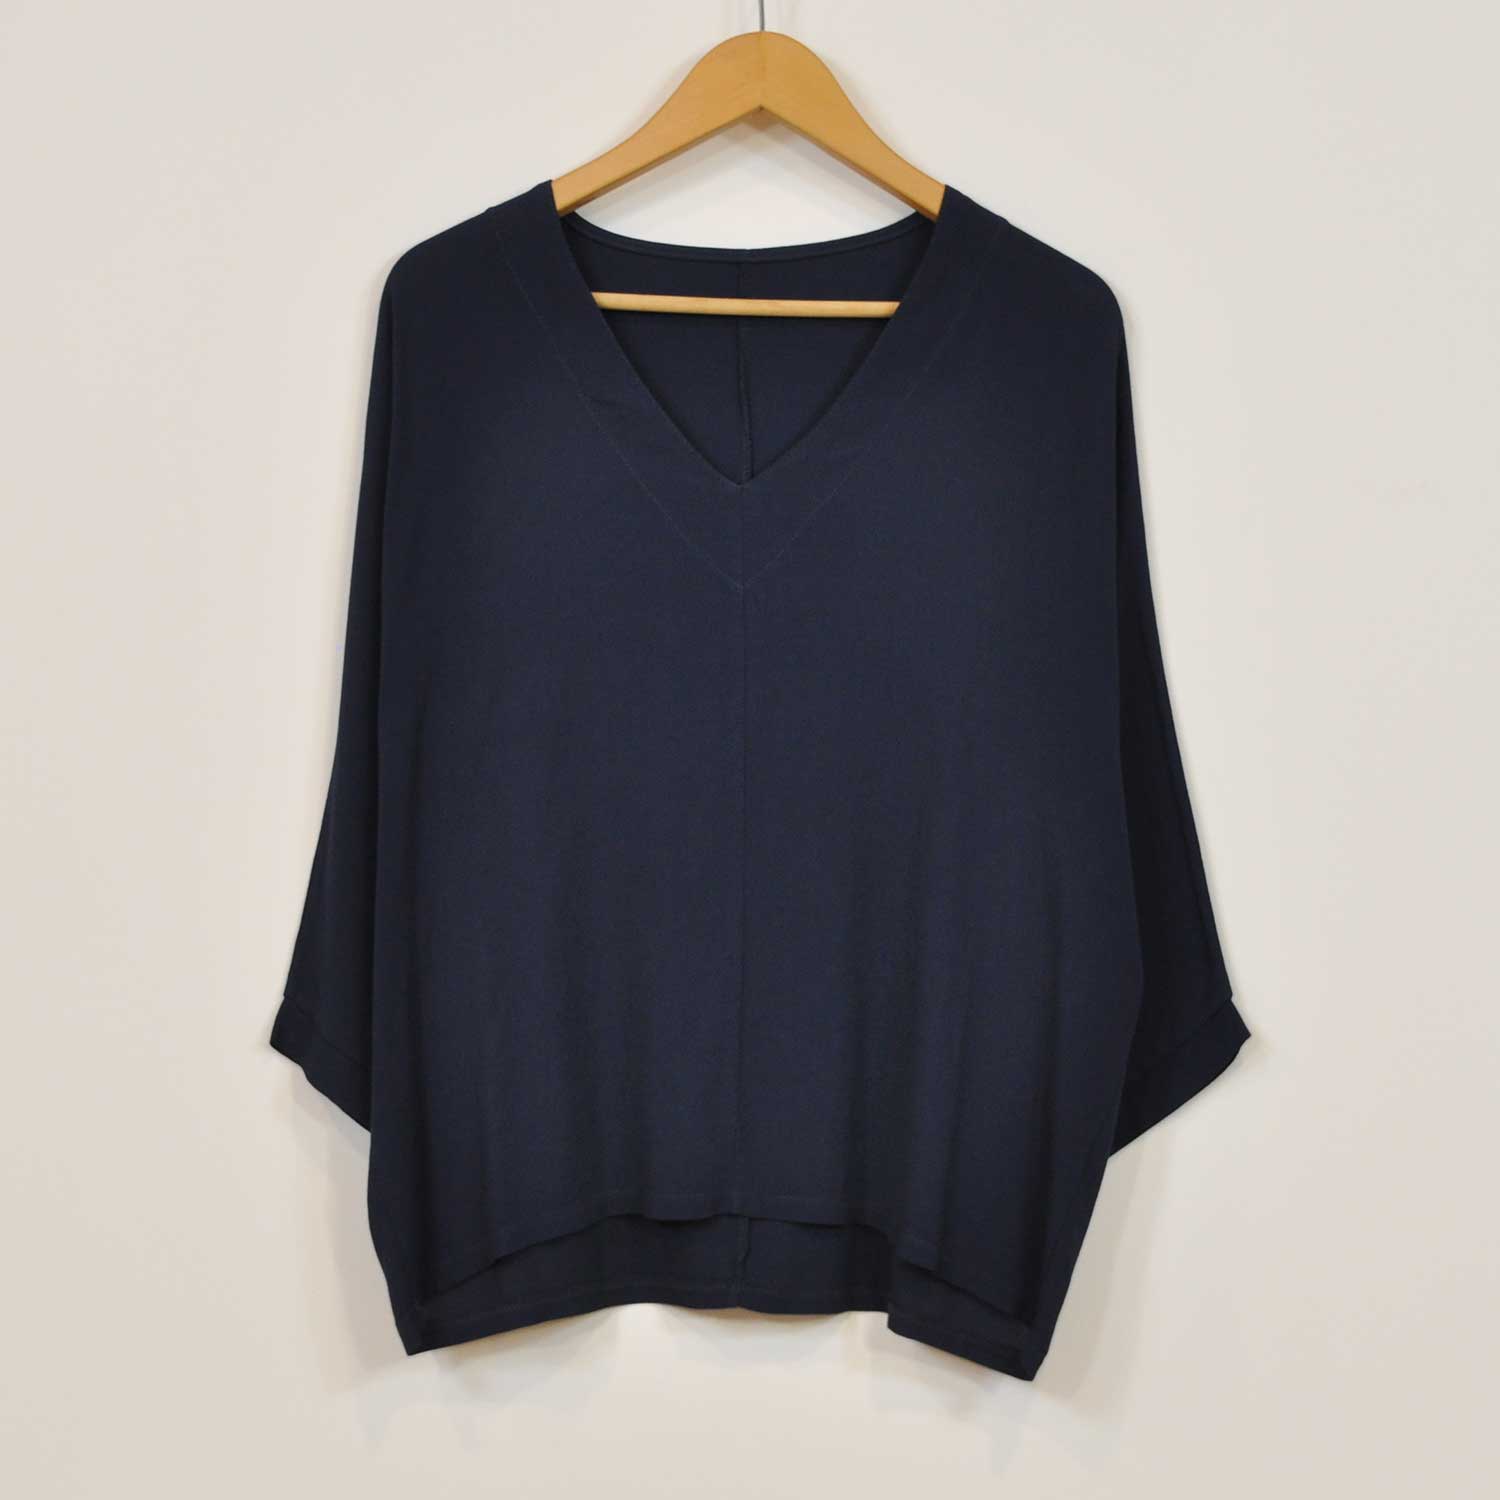 Dark blue V-neck sewing blouse